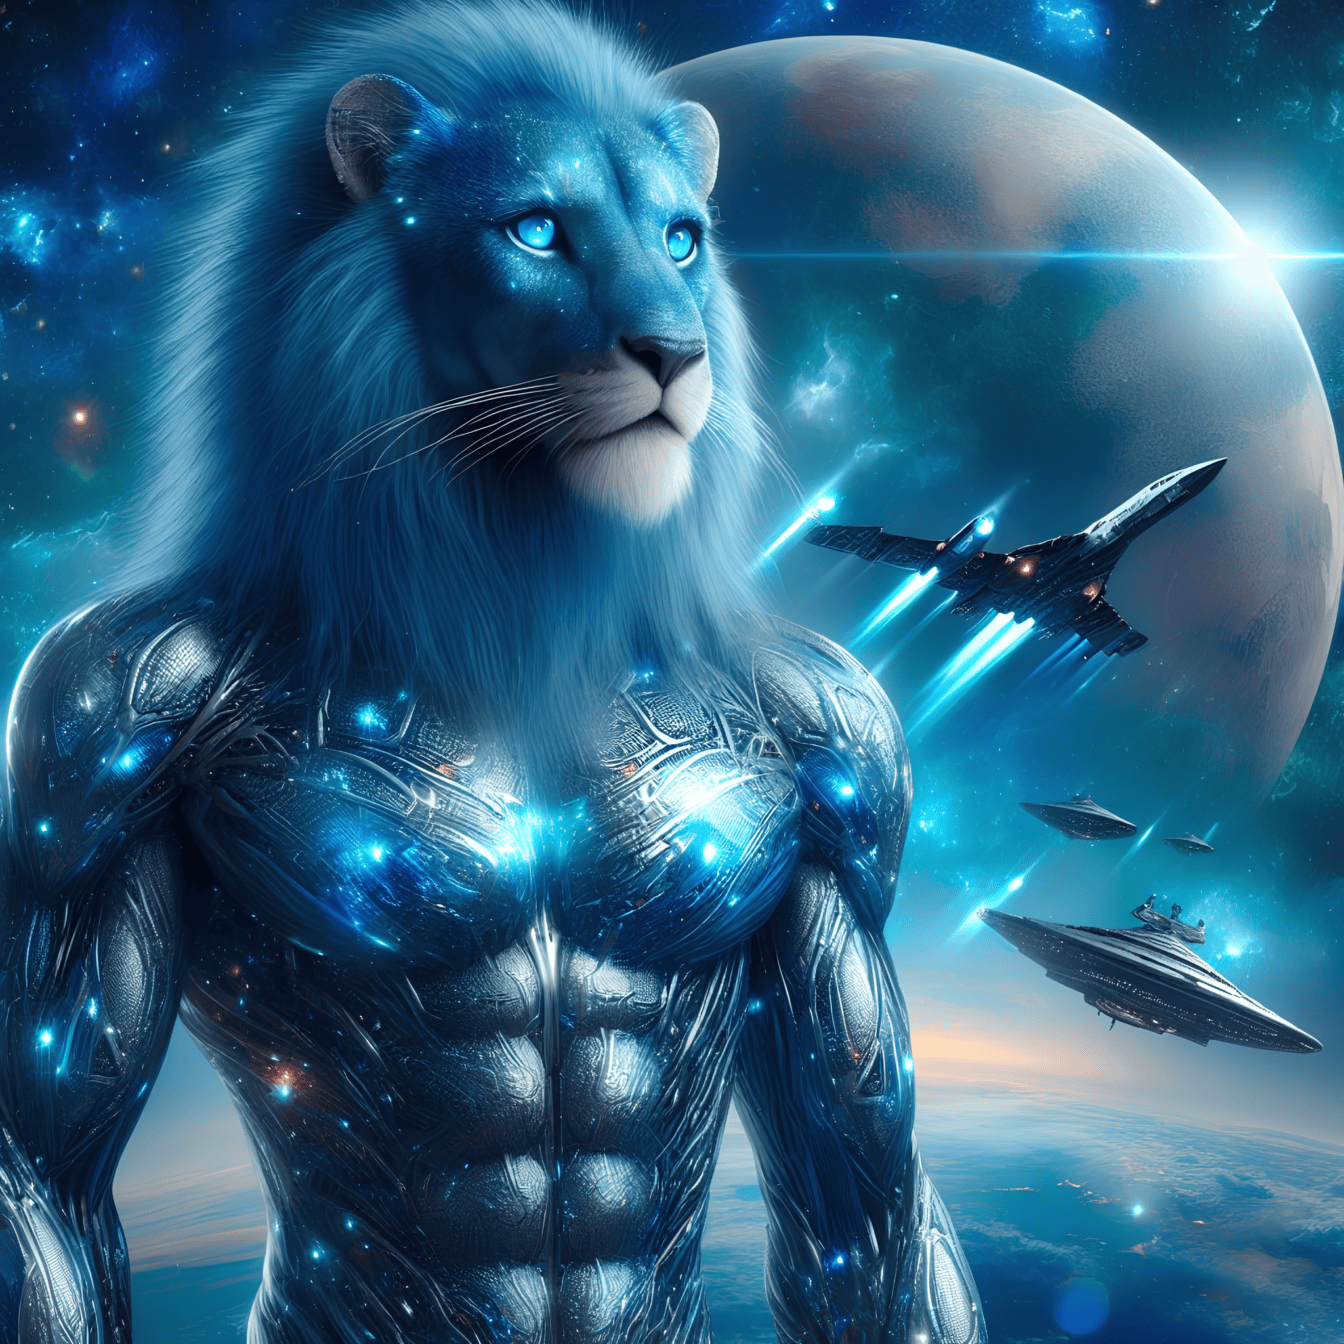 Інопланетний лев-кіборг зі штучним інтелектом, людиноподібний інопланетянин з бойовим космічним кораблем на задньому плані